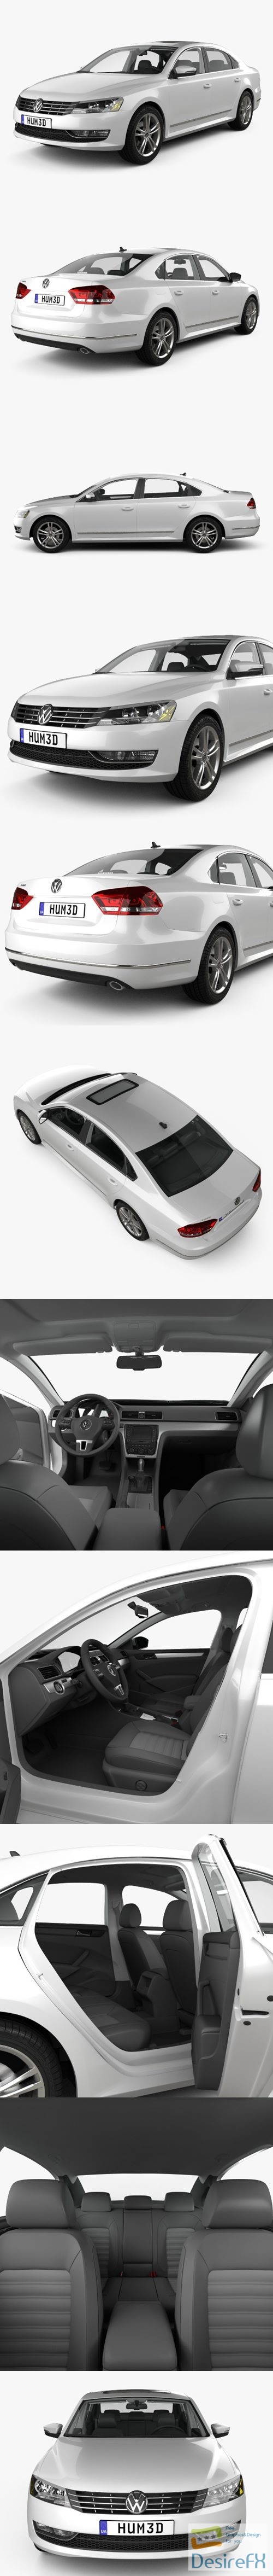 Volkswagen Passat B7 with HQ interior 2011 3D Model